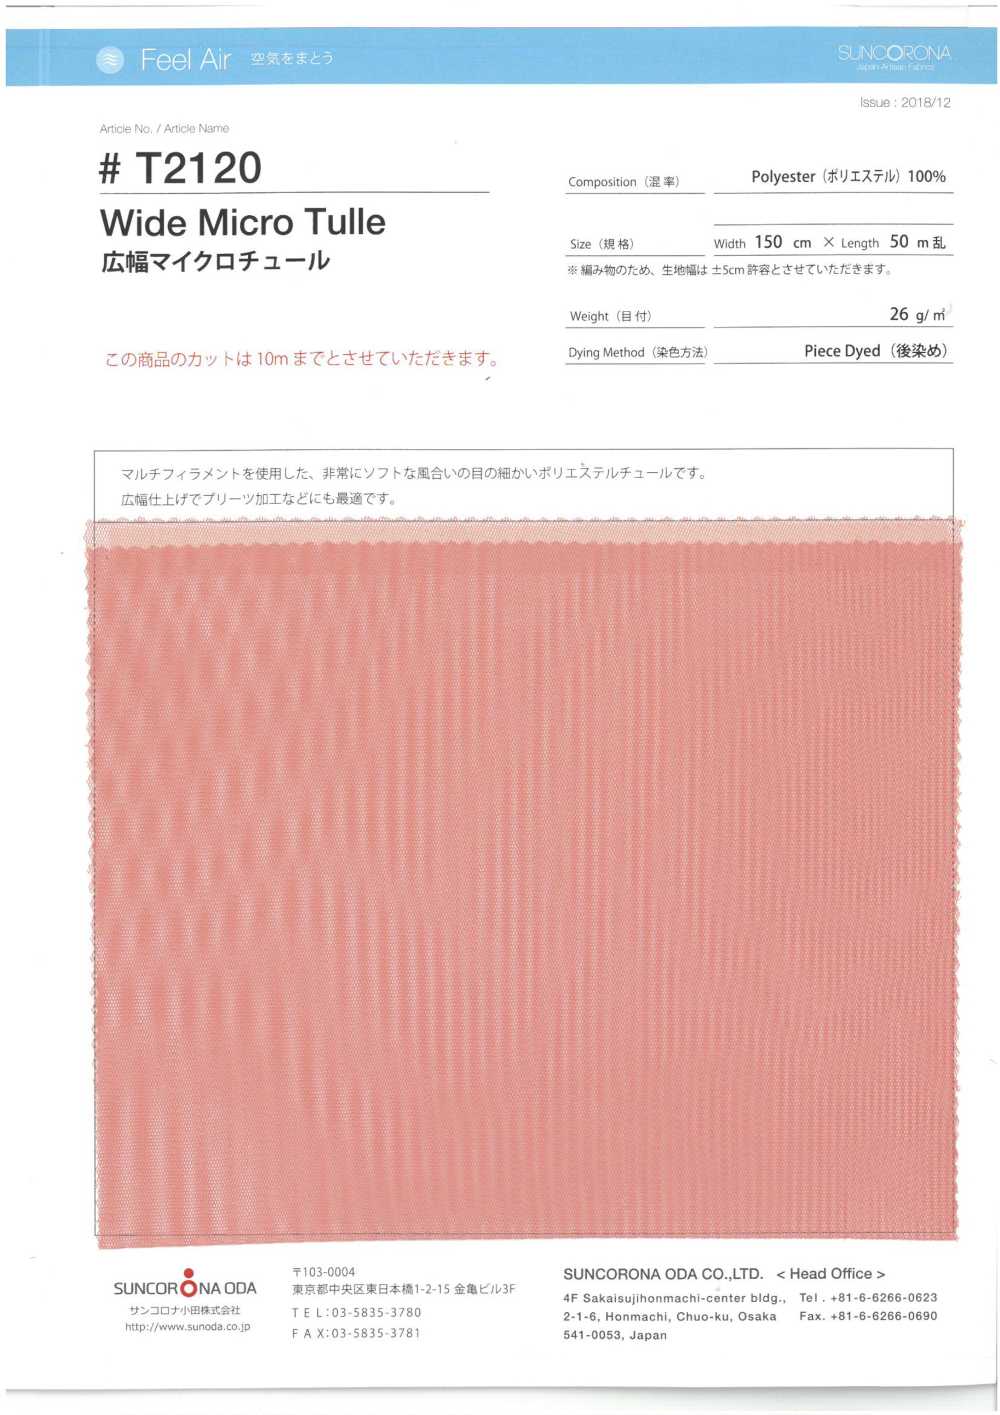 T2120 Micro Tulle Grande Largeur[Fabrication De Textile] Suncorona Oda